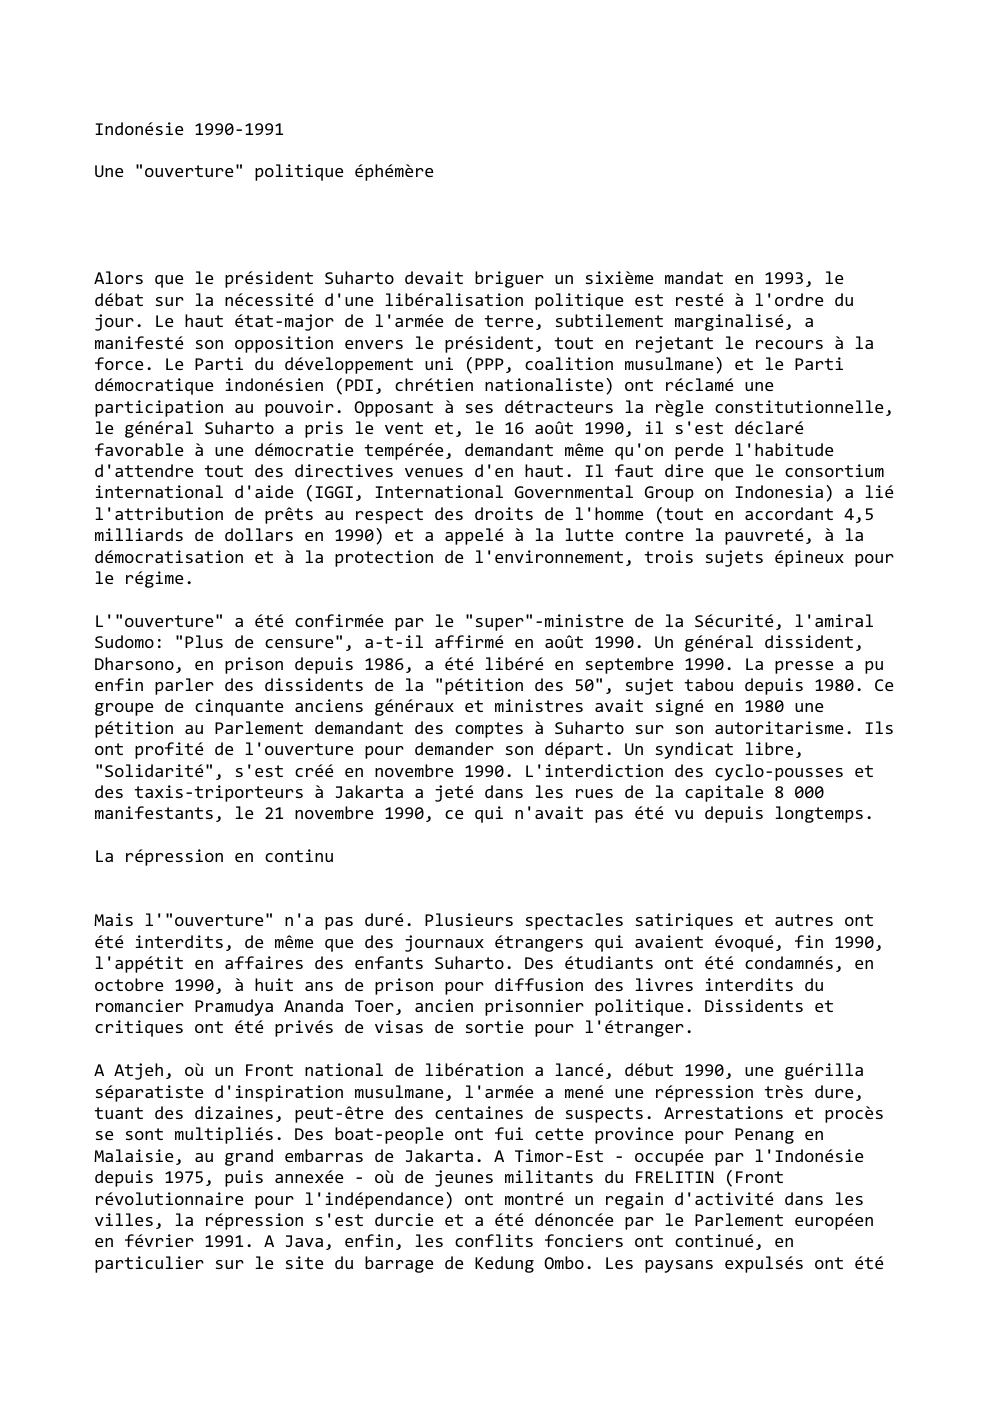 Prévisualisation du document Indonésie 1990-1991
Une "ouverture" politique éphémère

Alors que le président Suharto devait briguer un sixième mandat en 1993, le
débat...